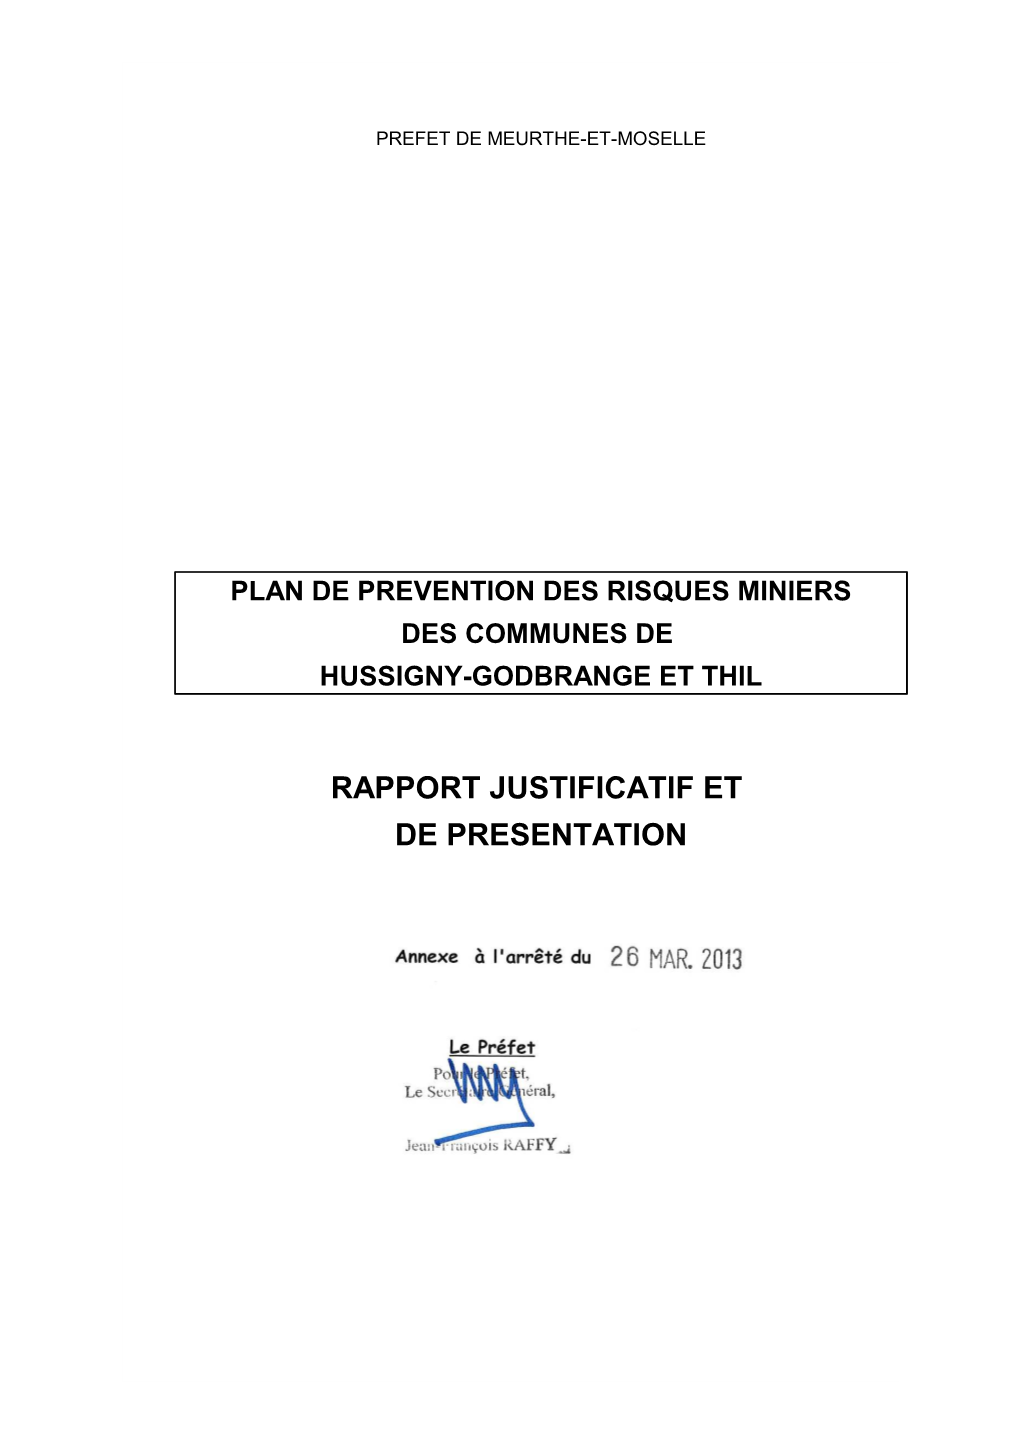 RAPPORT JUSTIFICATIF ET DE PRESENTATION Rapport De Présentation - PPRM De Hussigny-Godbrange Et Thil Janvier 2013